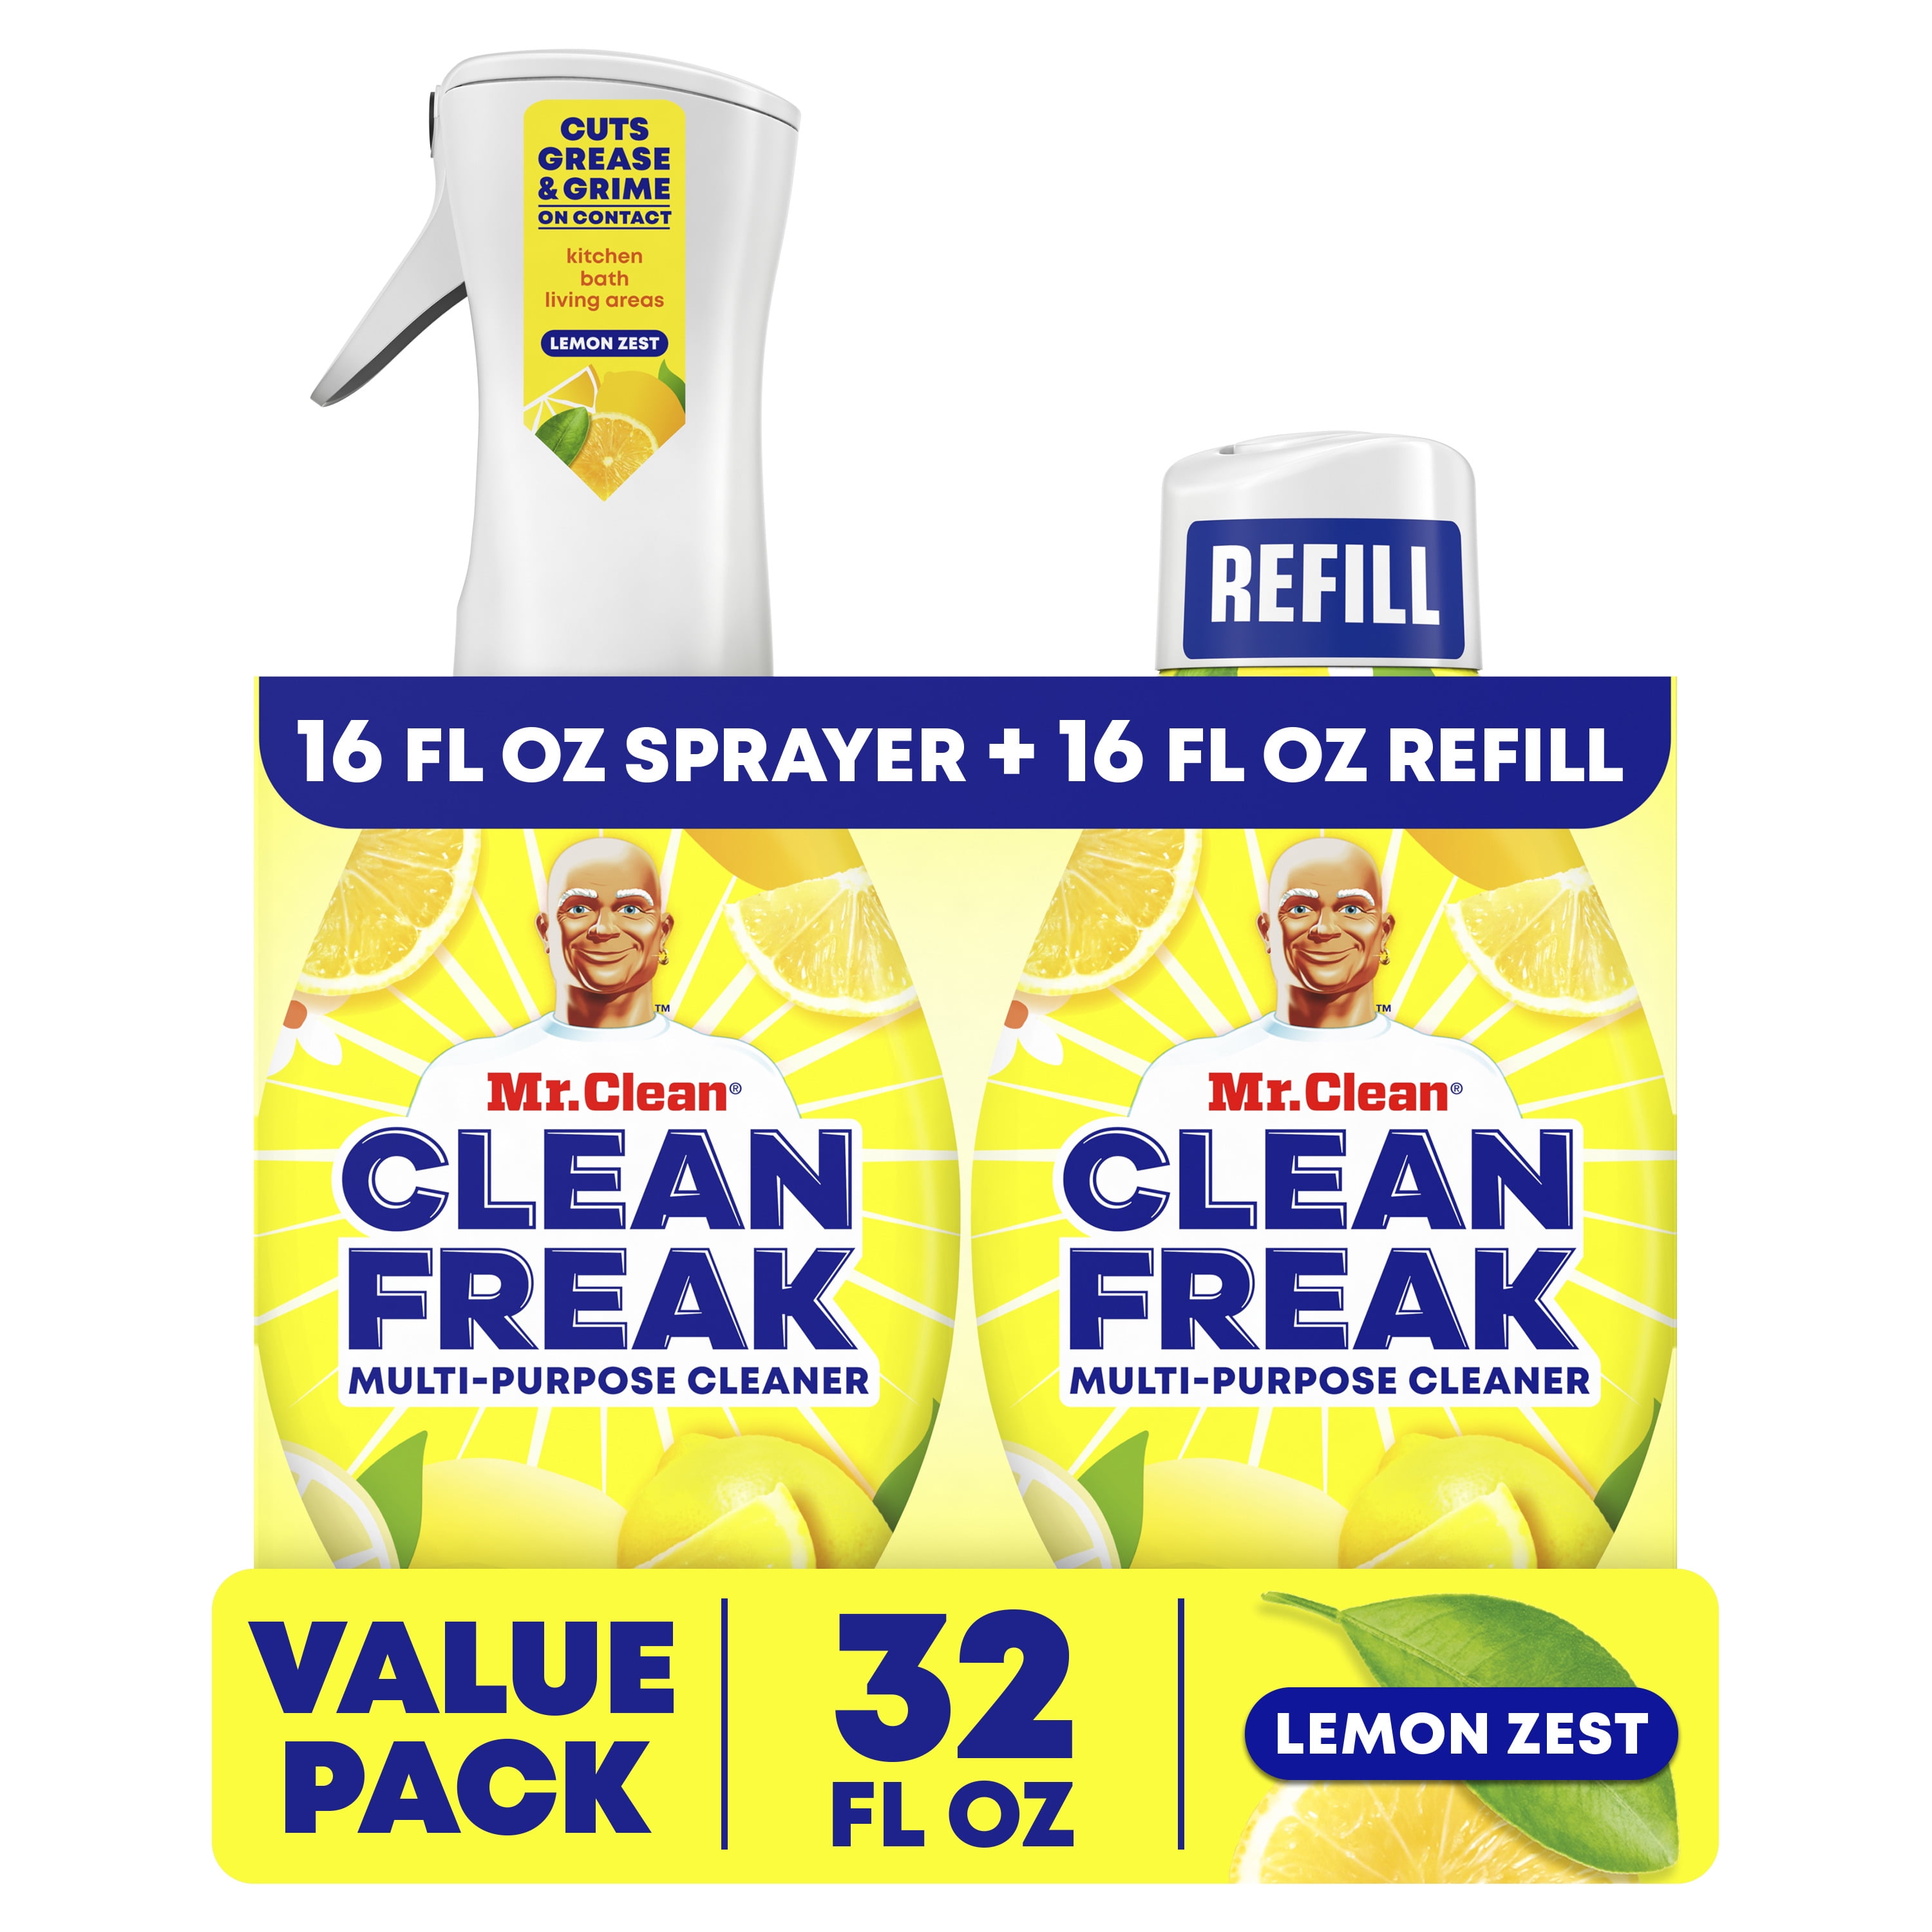 Mr. Clean, Clean Freak Multi-Surface Spray, Pk 1 Starter Kit, 1 Refill, Lemon Zest, 32 fl oz